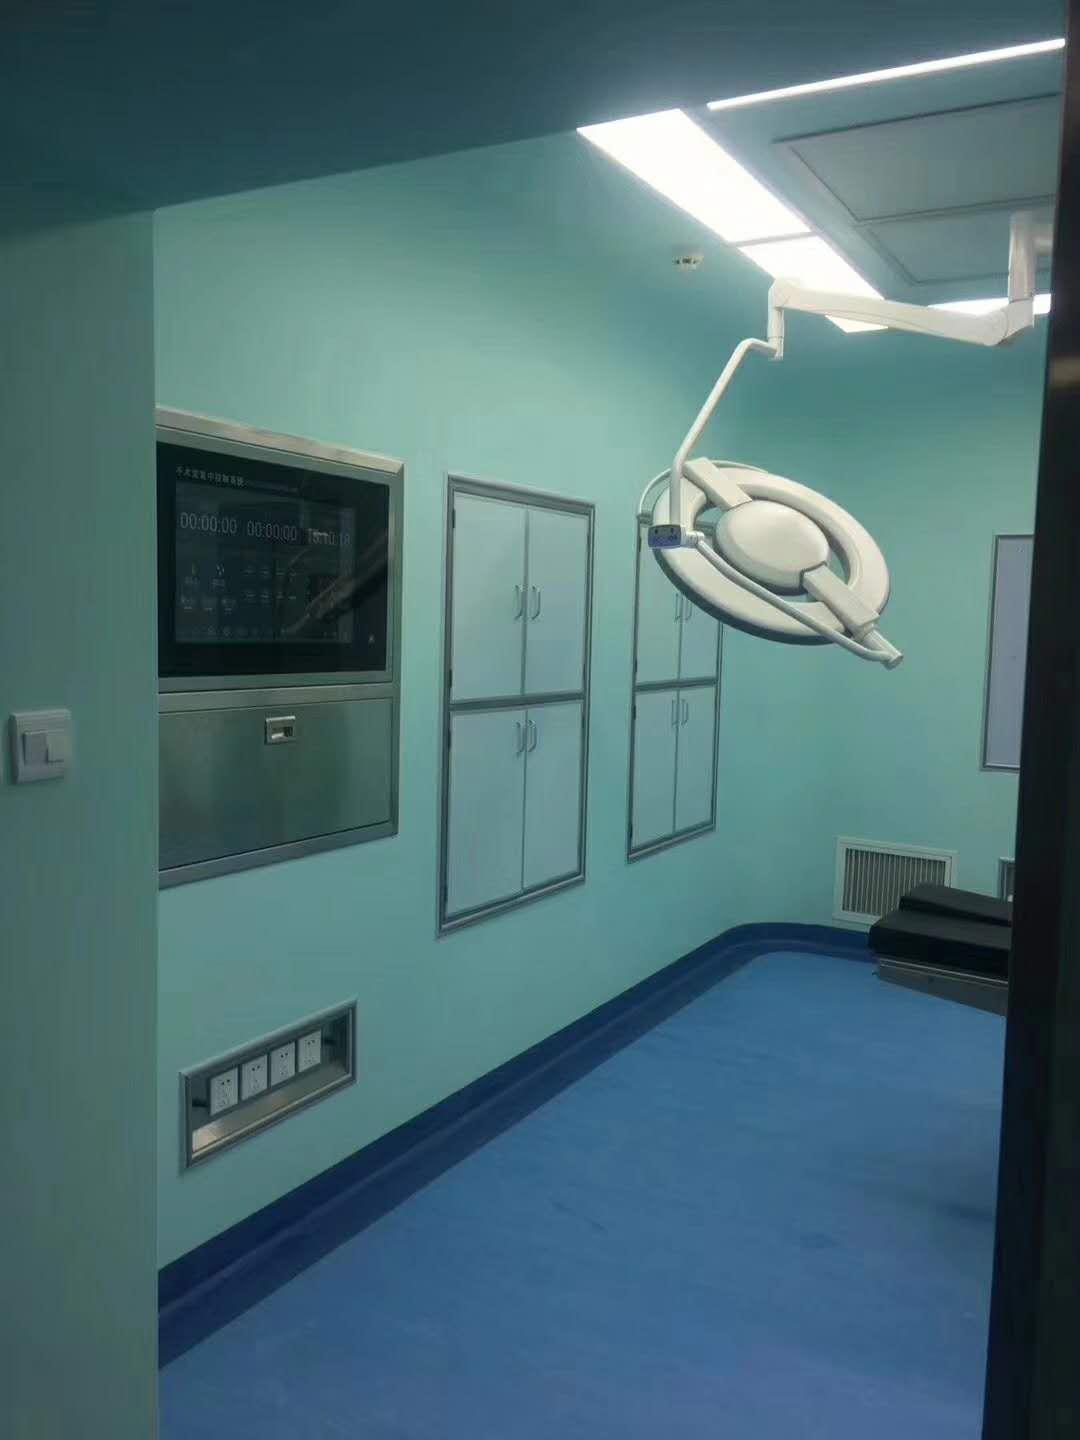 层流手术室与洁净手术室的区别